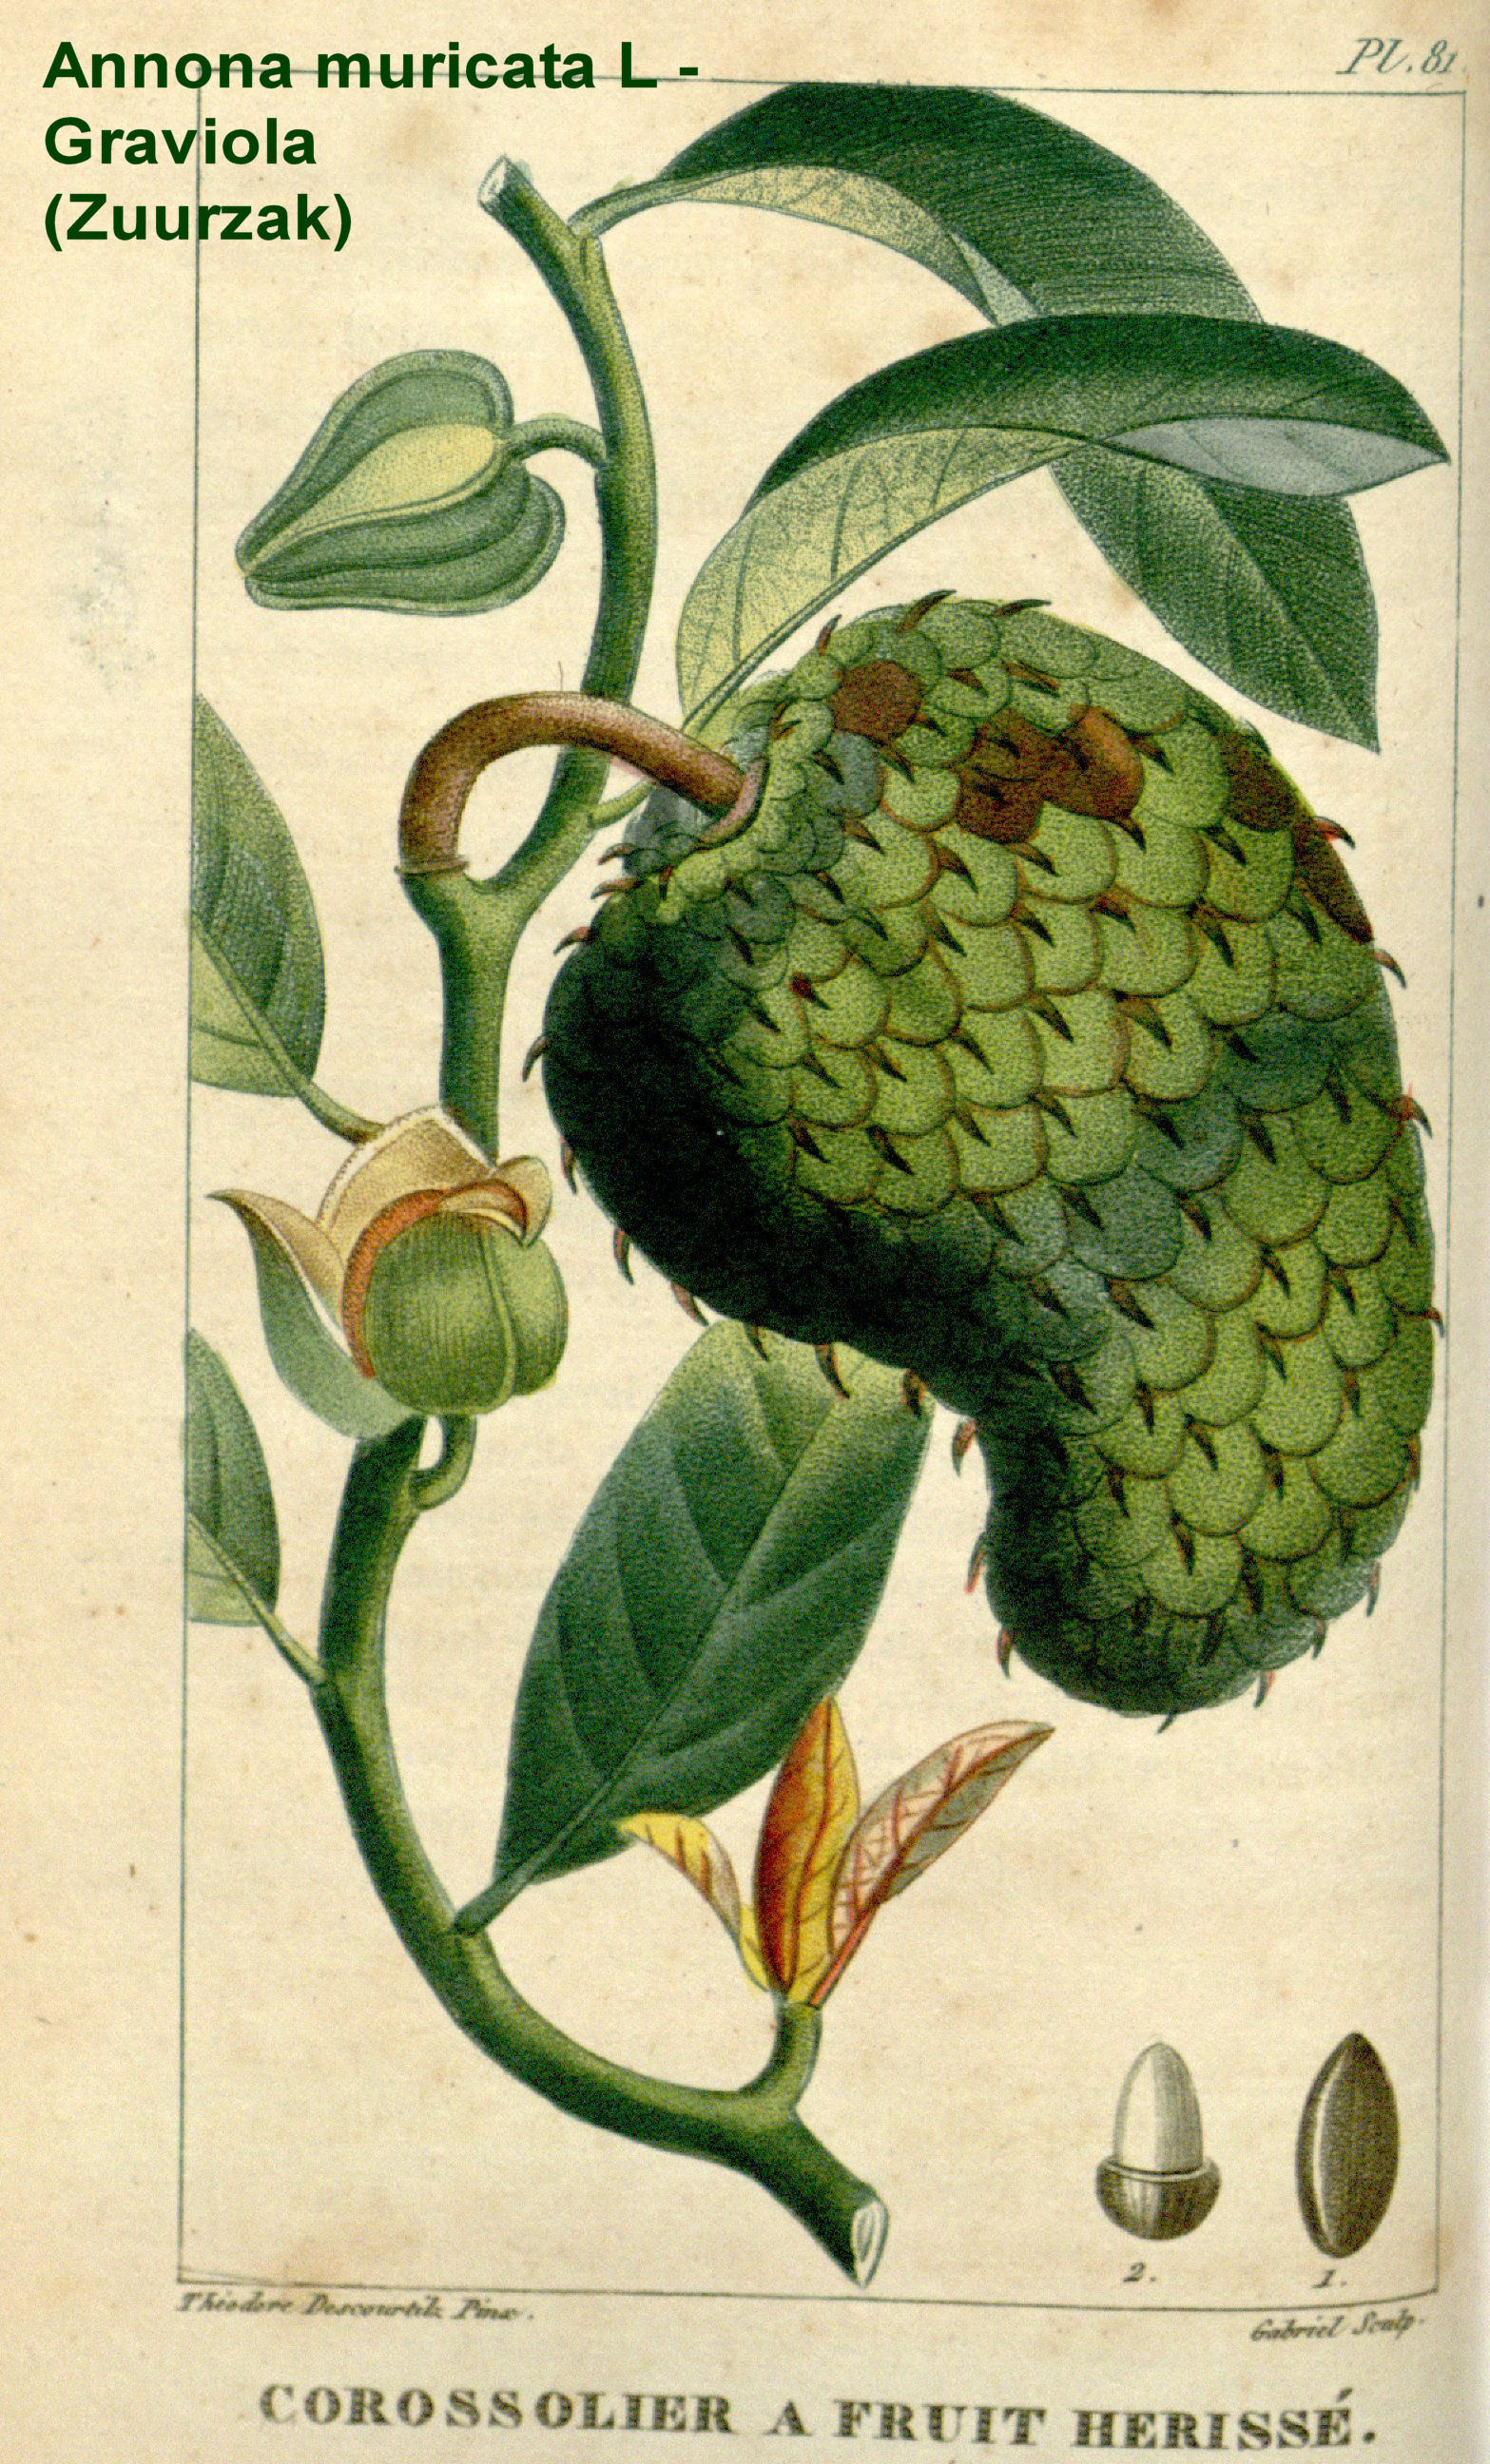 Annona muricata fruit